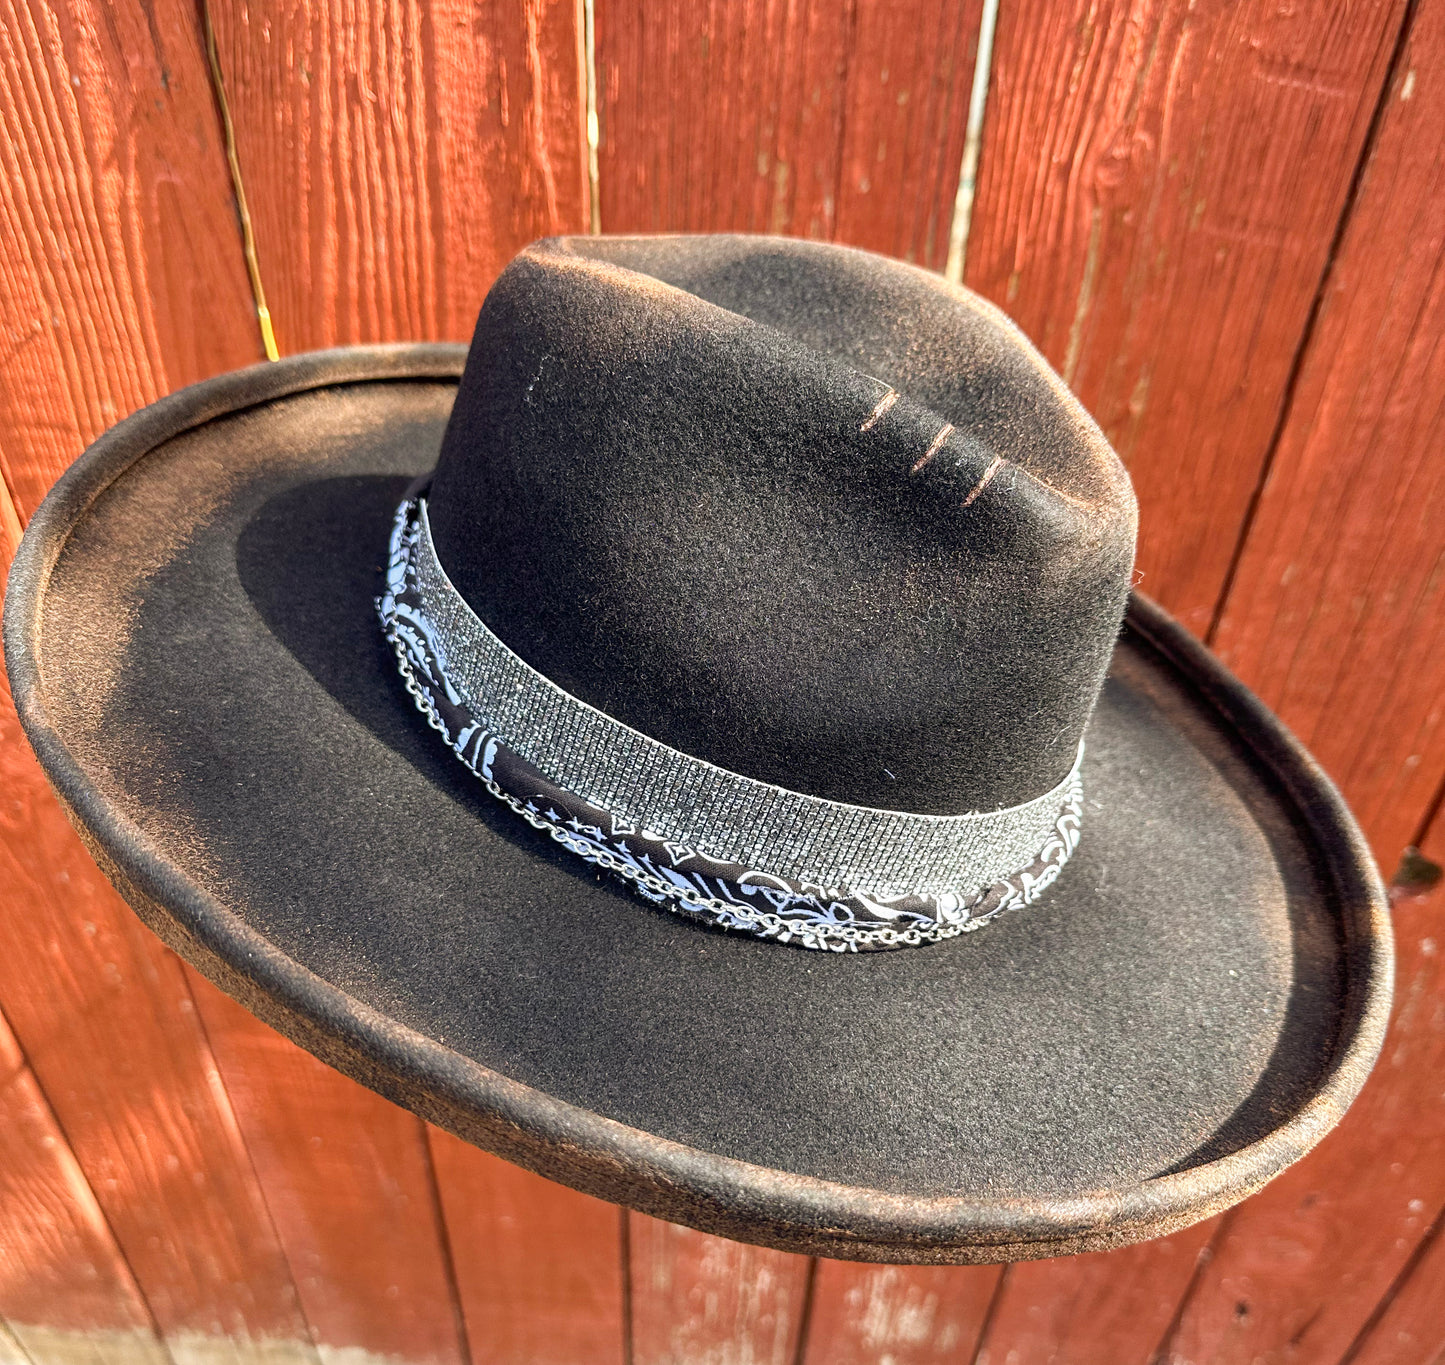 Steer Head Hat